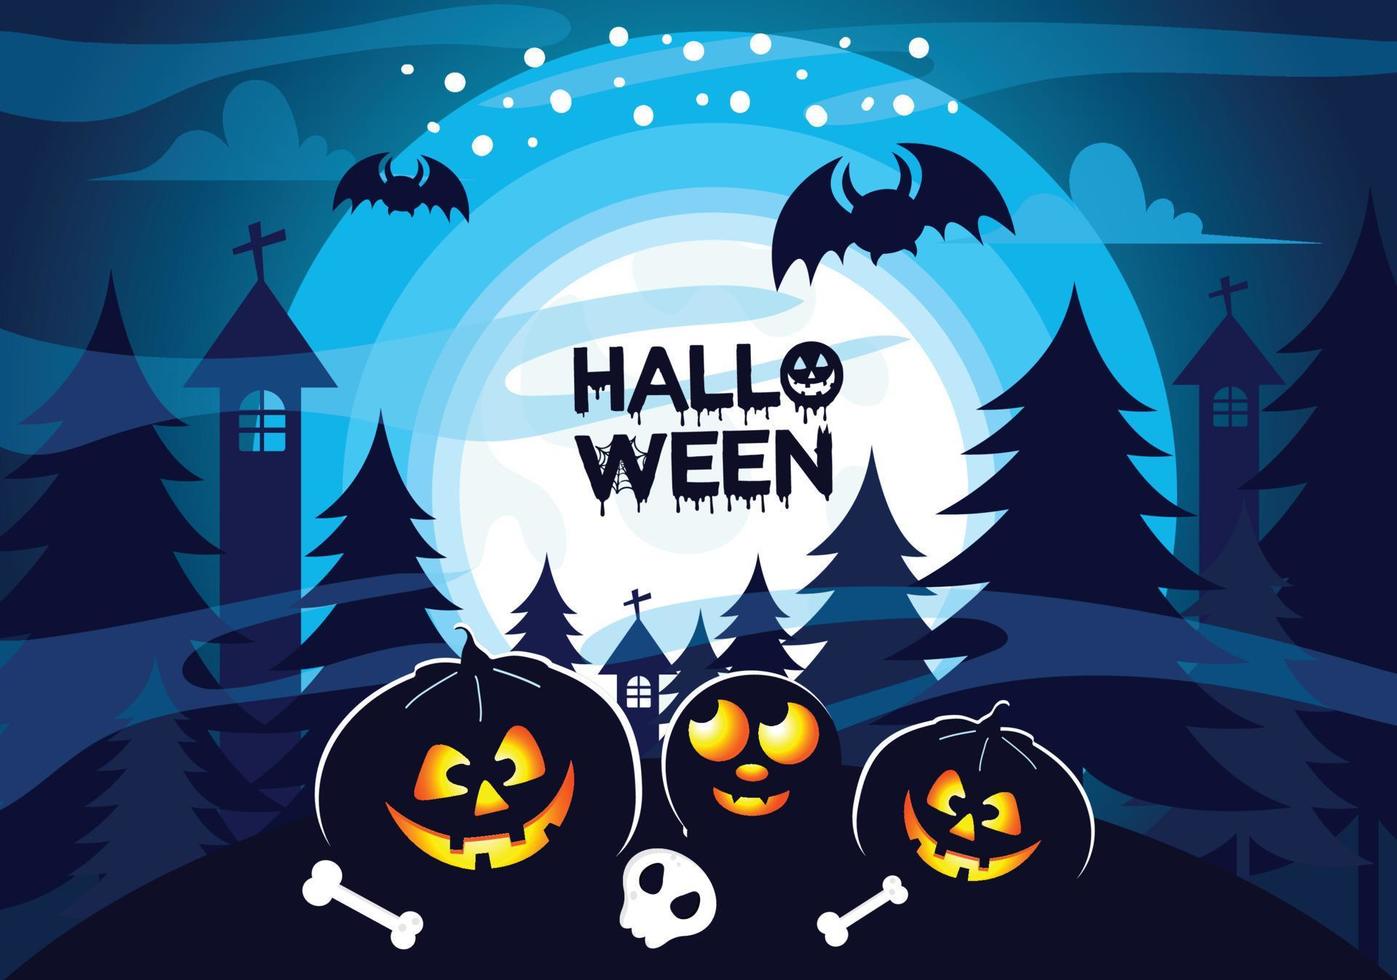 assustador halloween fantasia vector castelo bruxa abóbora morcego azul luar ilustrações de fundo.